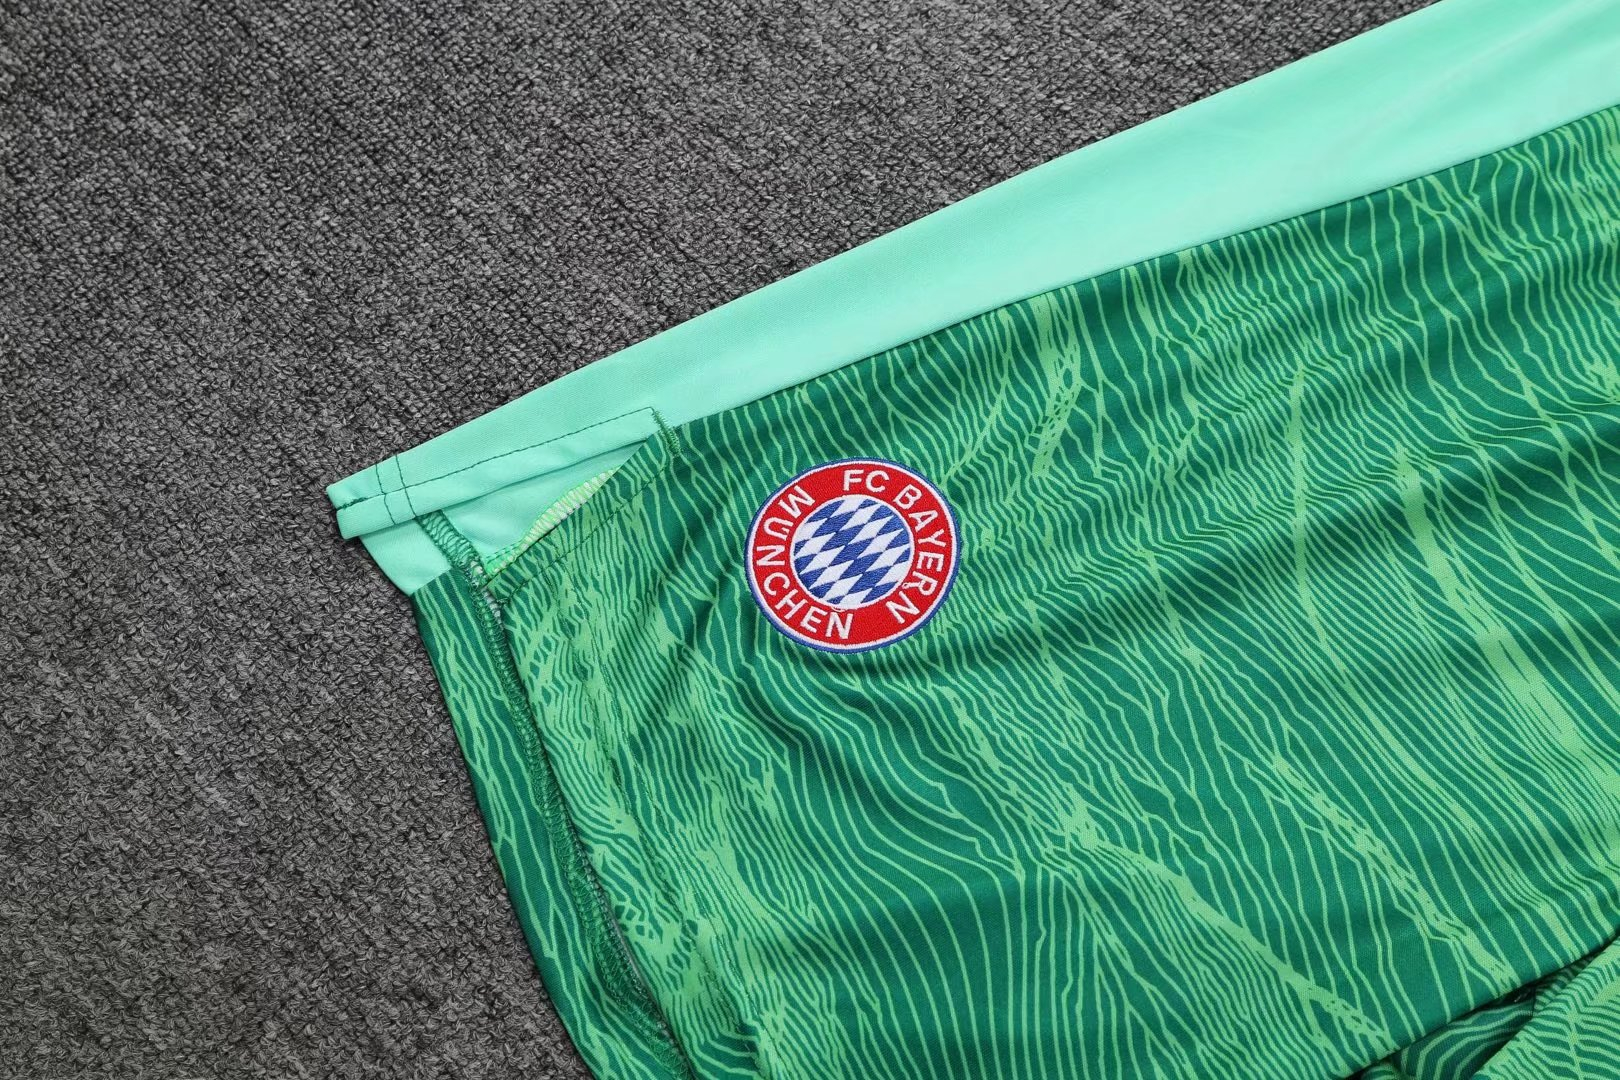 Bayern Munich Soccer Jersey + Short Set Replica Goalkeeper Green Mens 2021/22